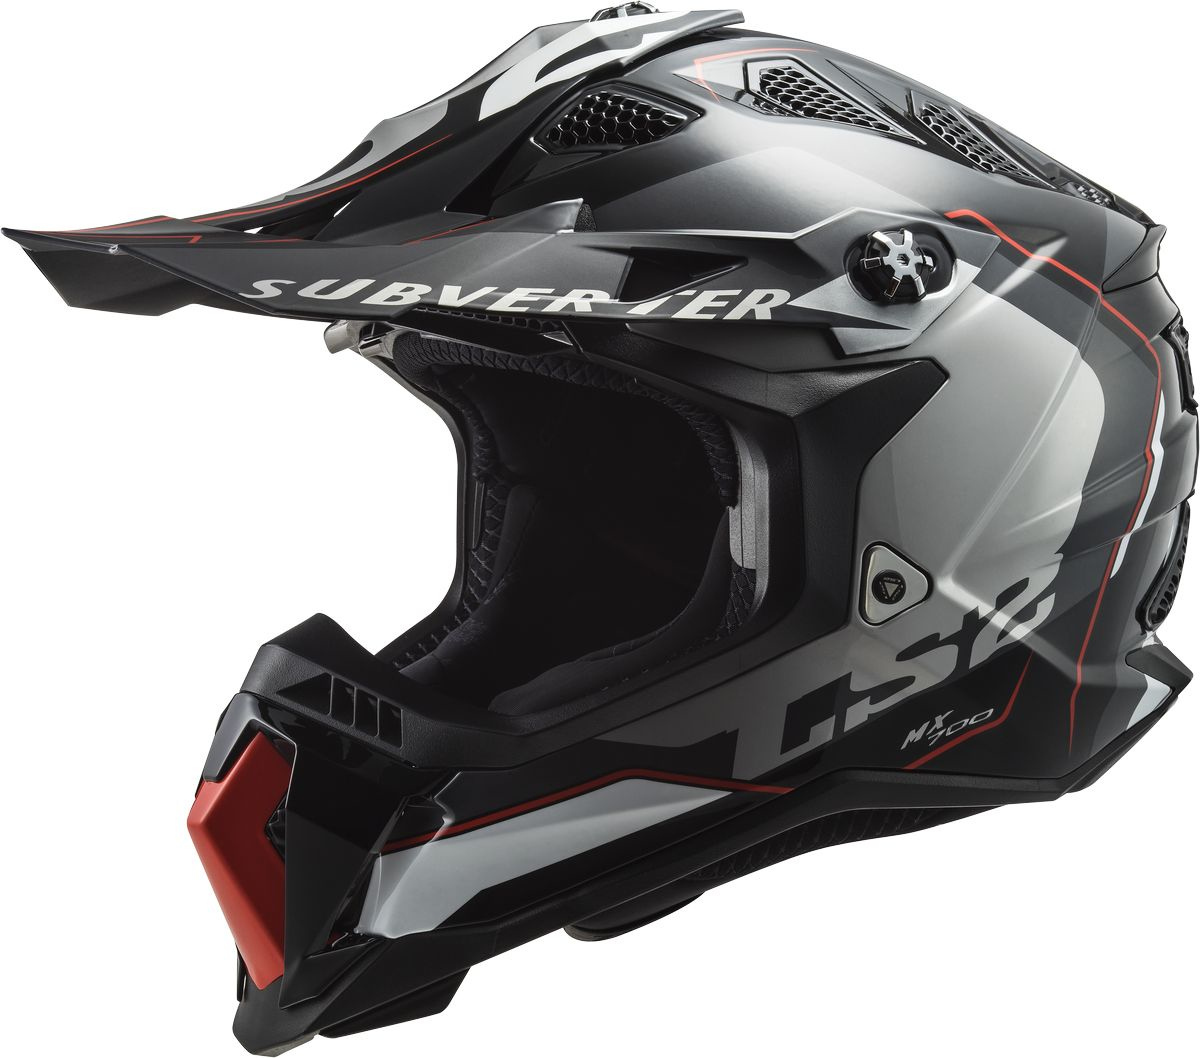 Шлем LS2 MX700 Subverter Evo Arched для мотокросса, черно-титановый